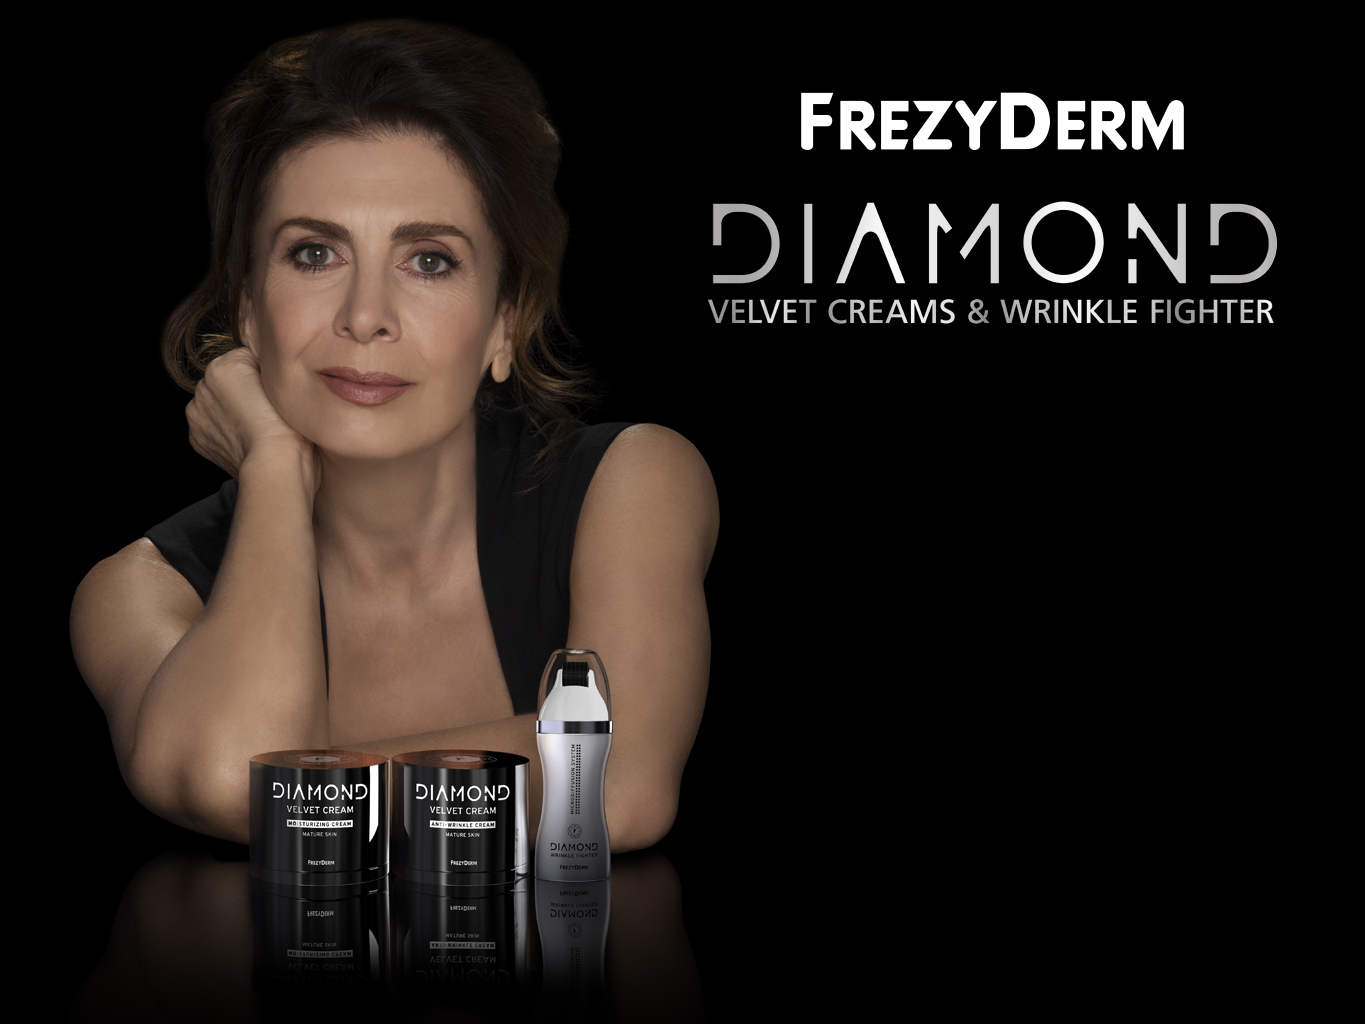 Η Κατερίνα Διδασκάλου Brand Ambassador της Frezyderm για τη σειρά προϊόντων DIAMOND Velvet